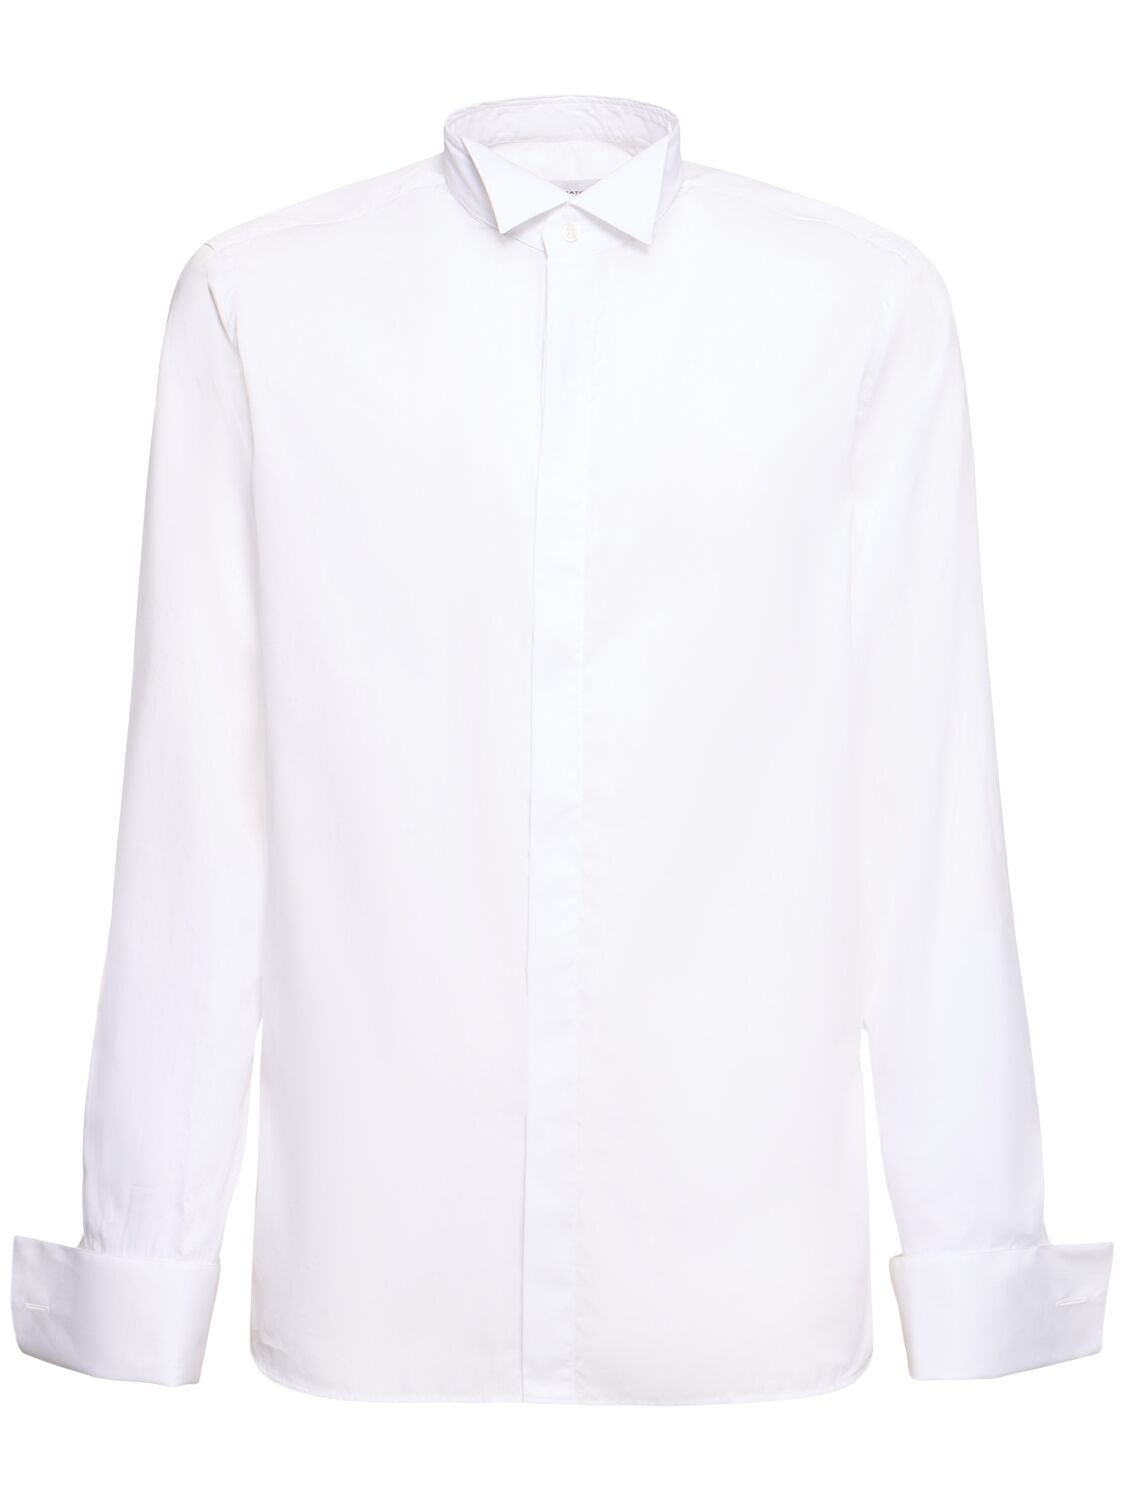 Tagliatore Classic Cotton Shirt In White